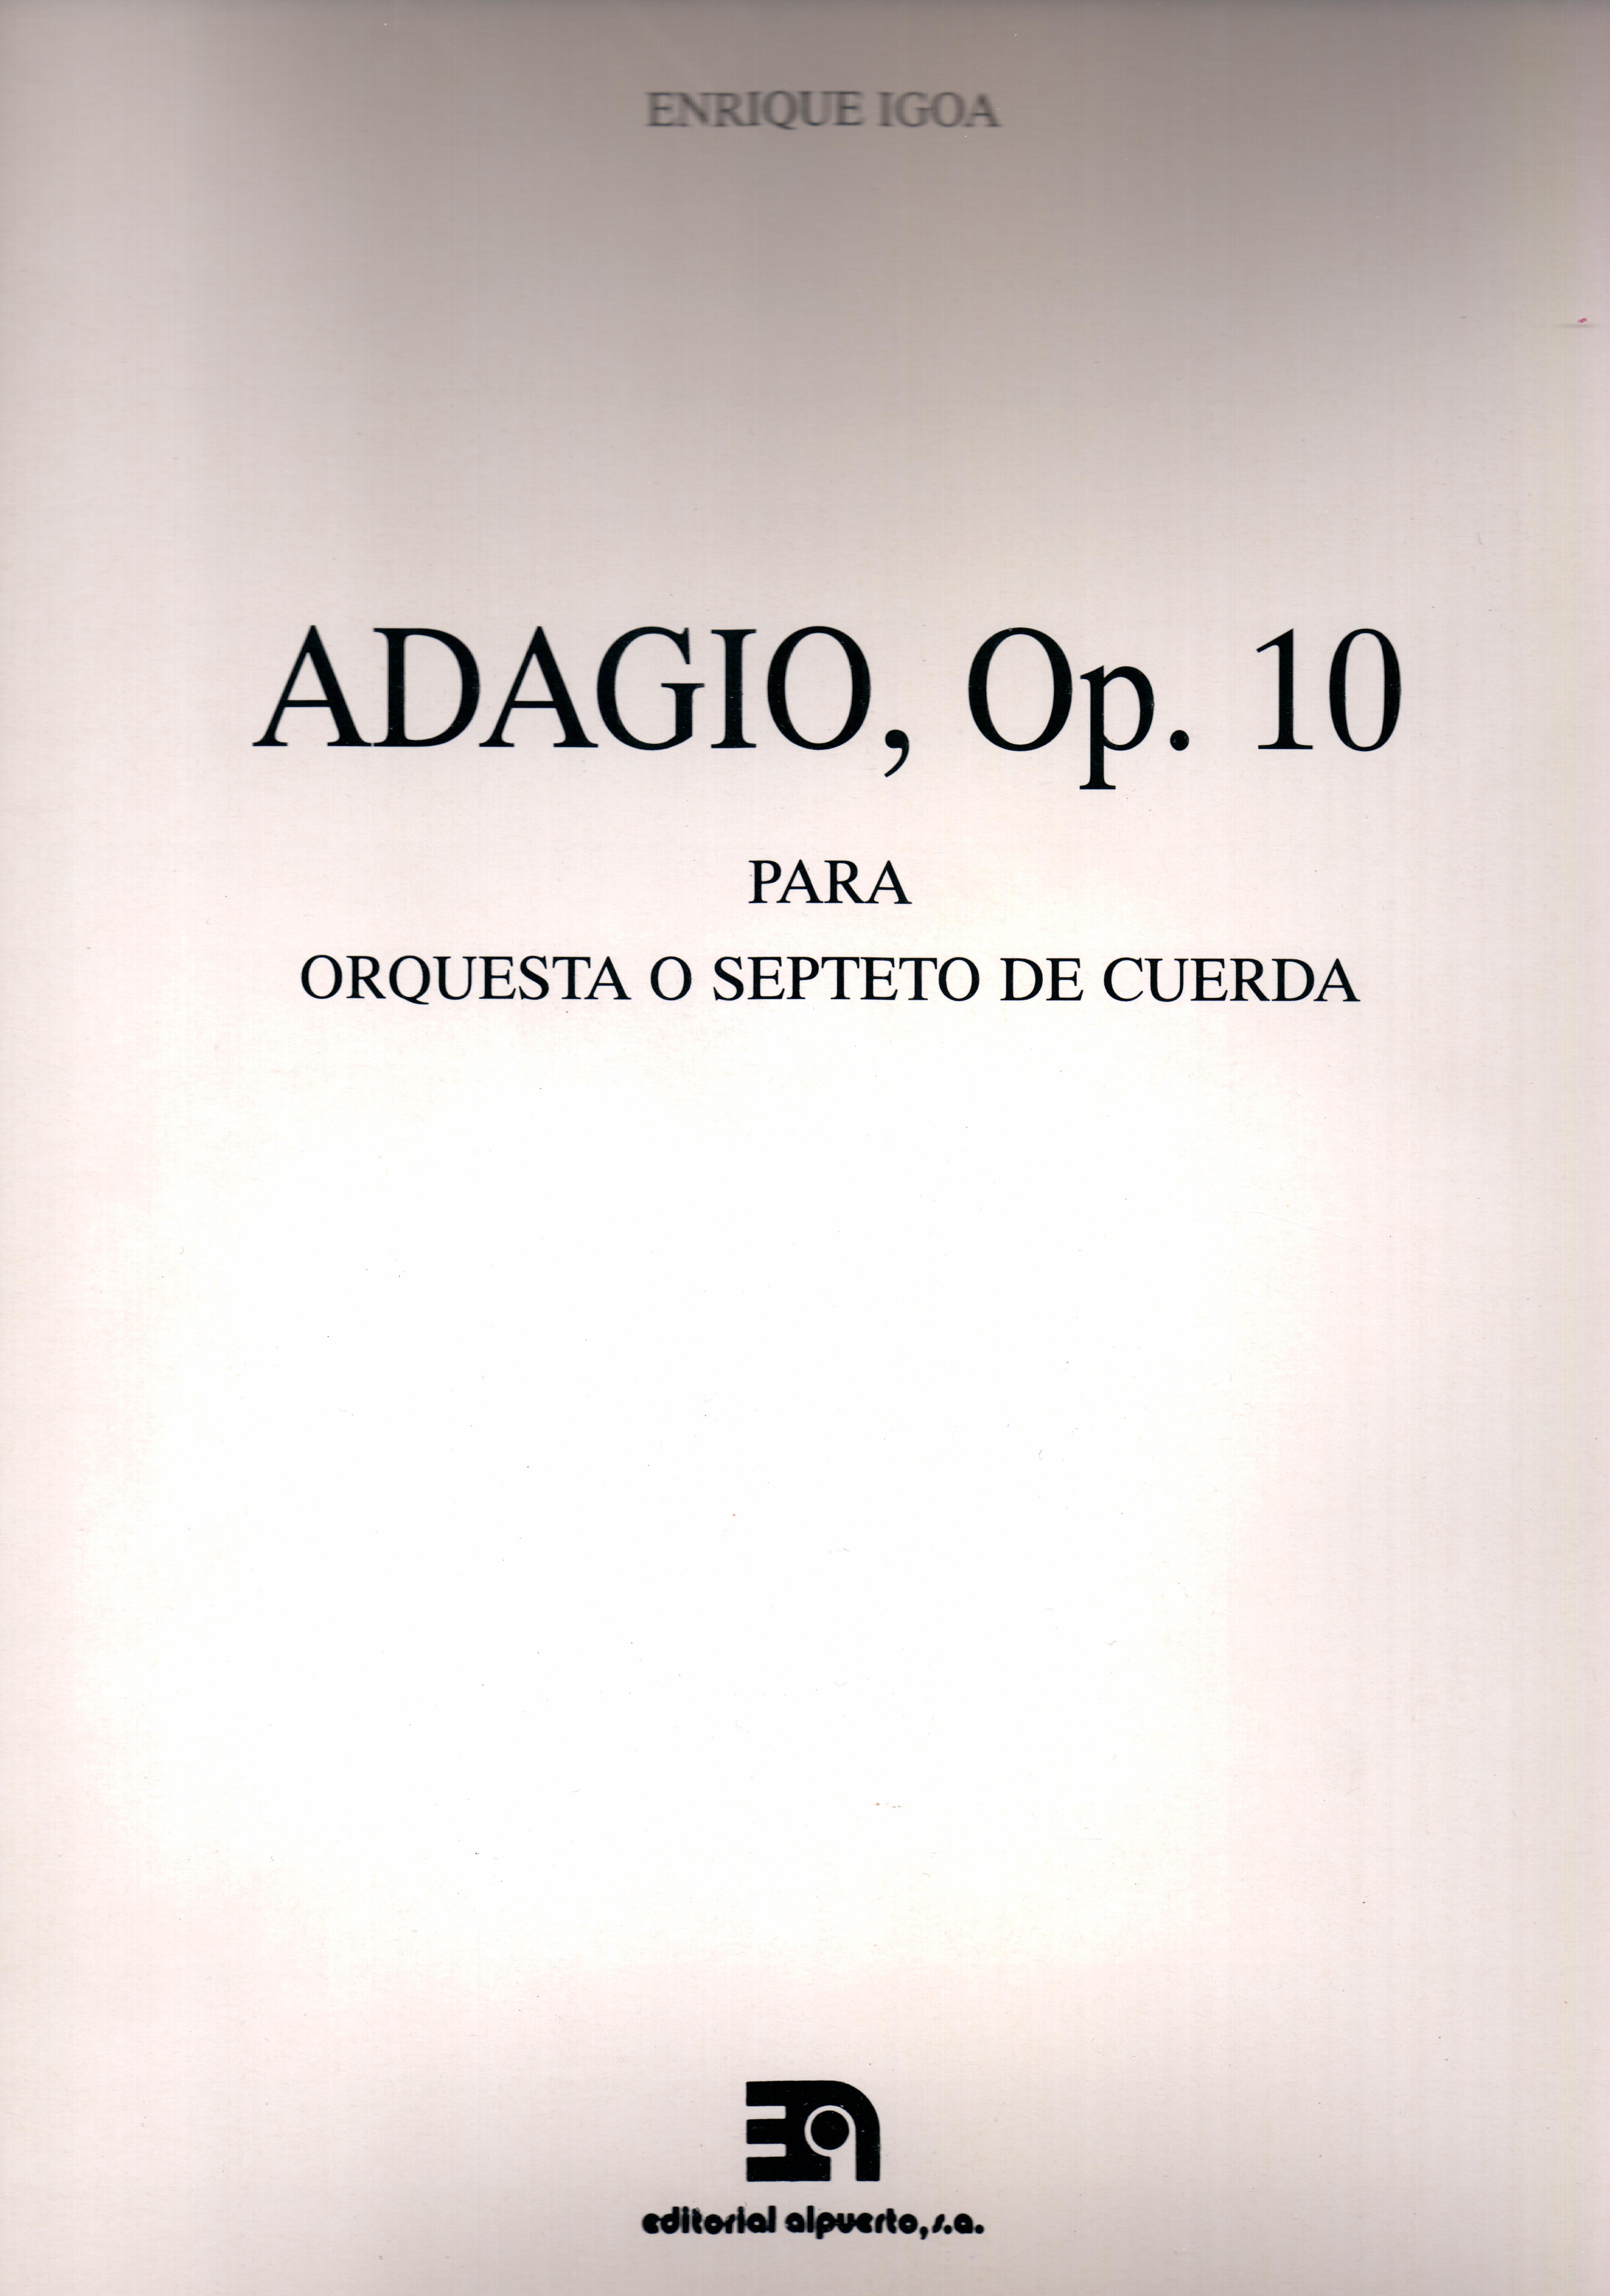 Adagio, op. 10
Para orquesta o septeto de cuerda